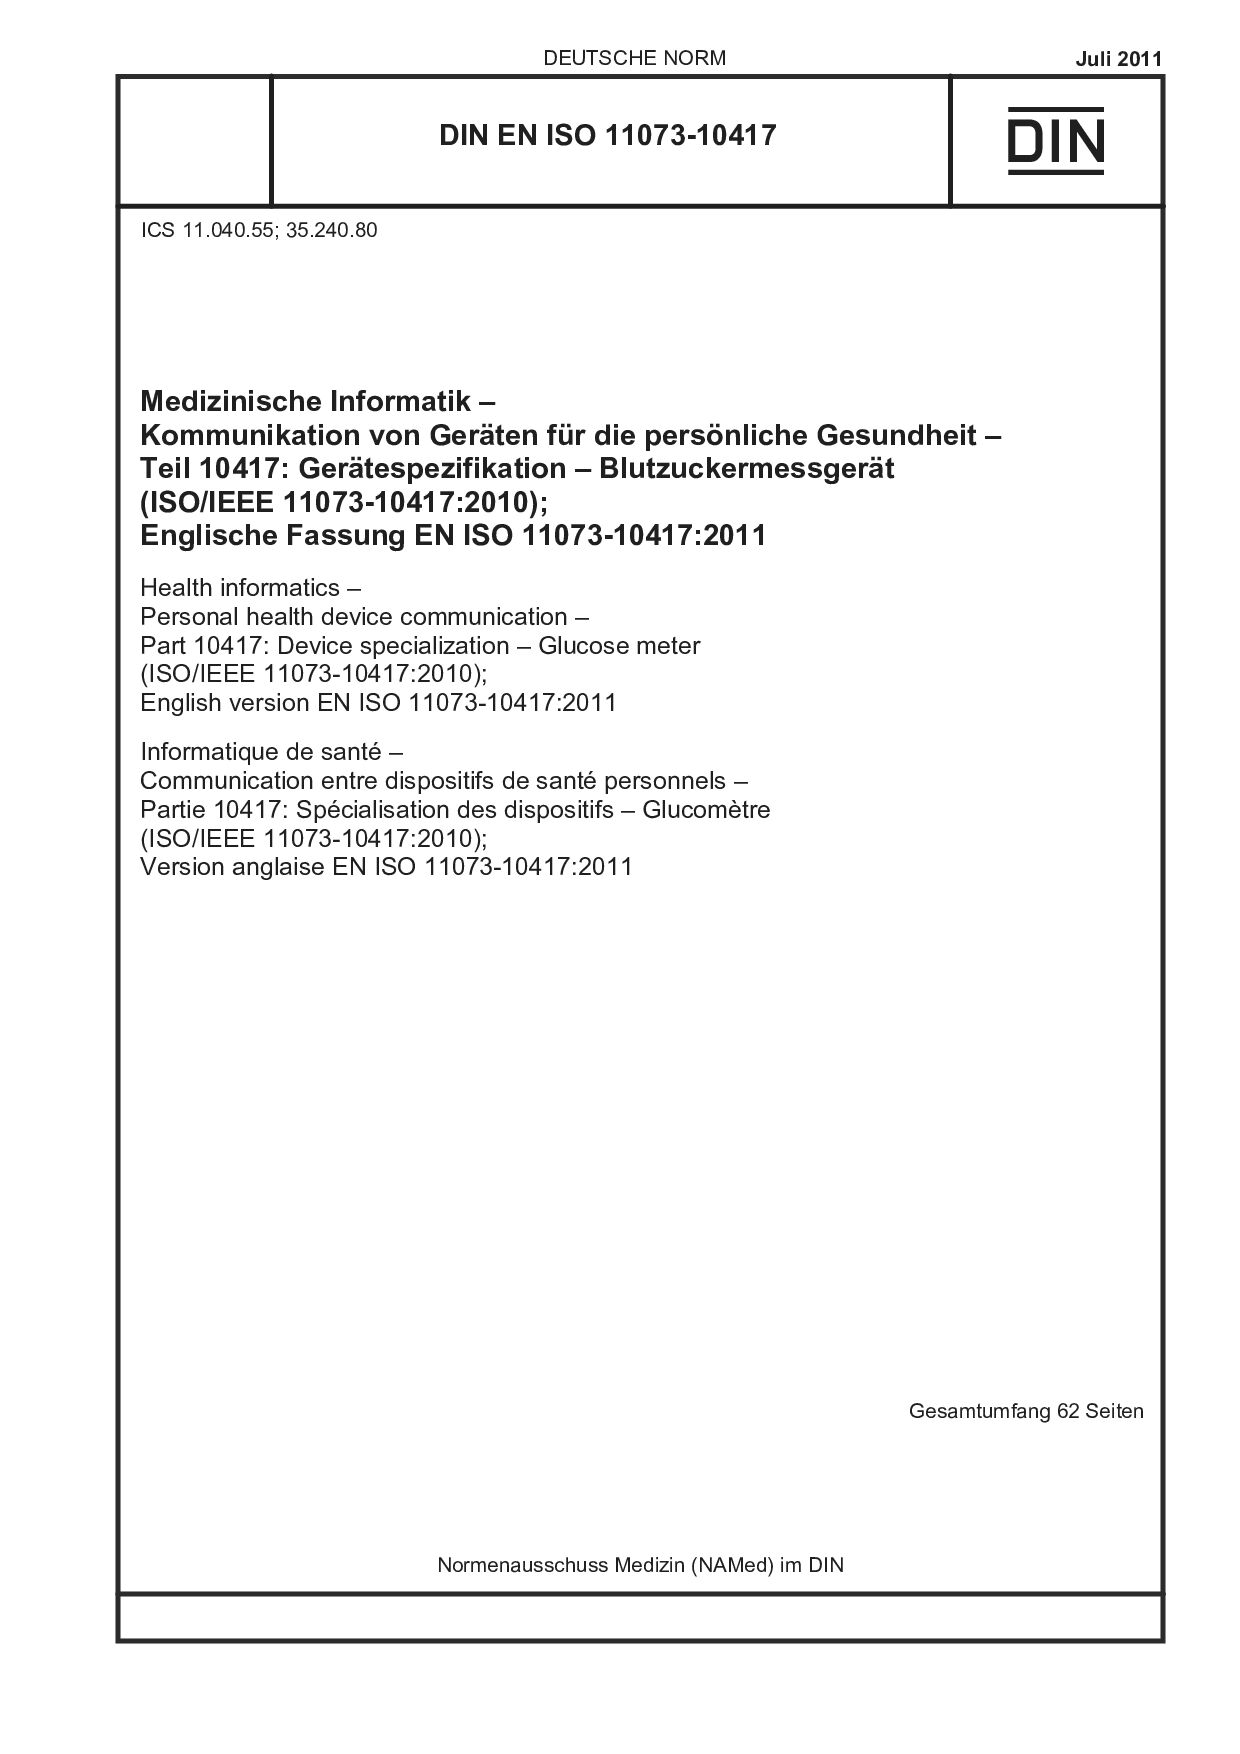 DIN EN ISO 11073-10417:2011